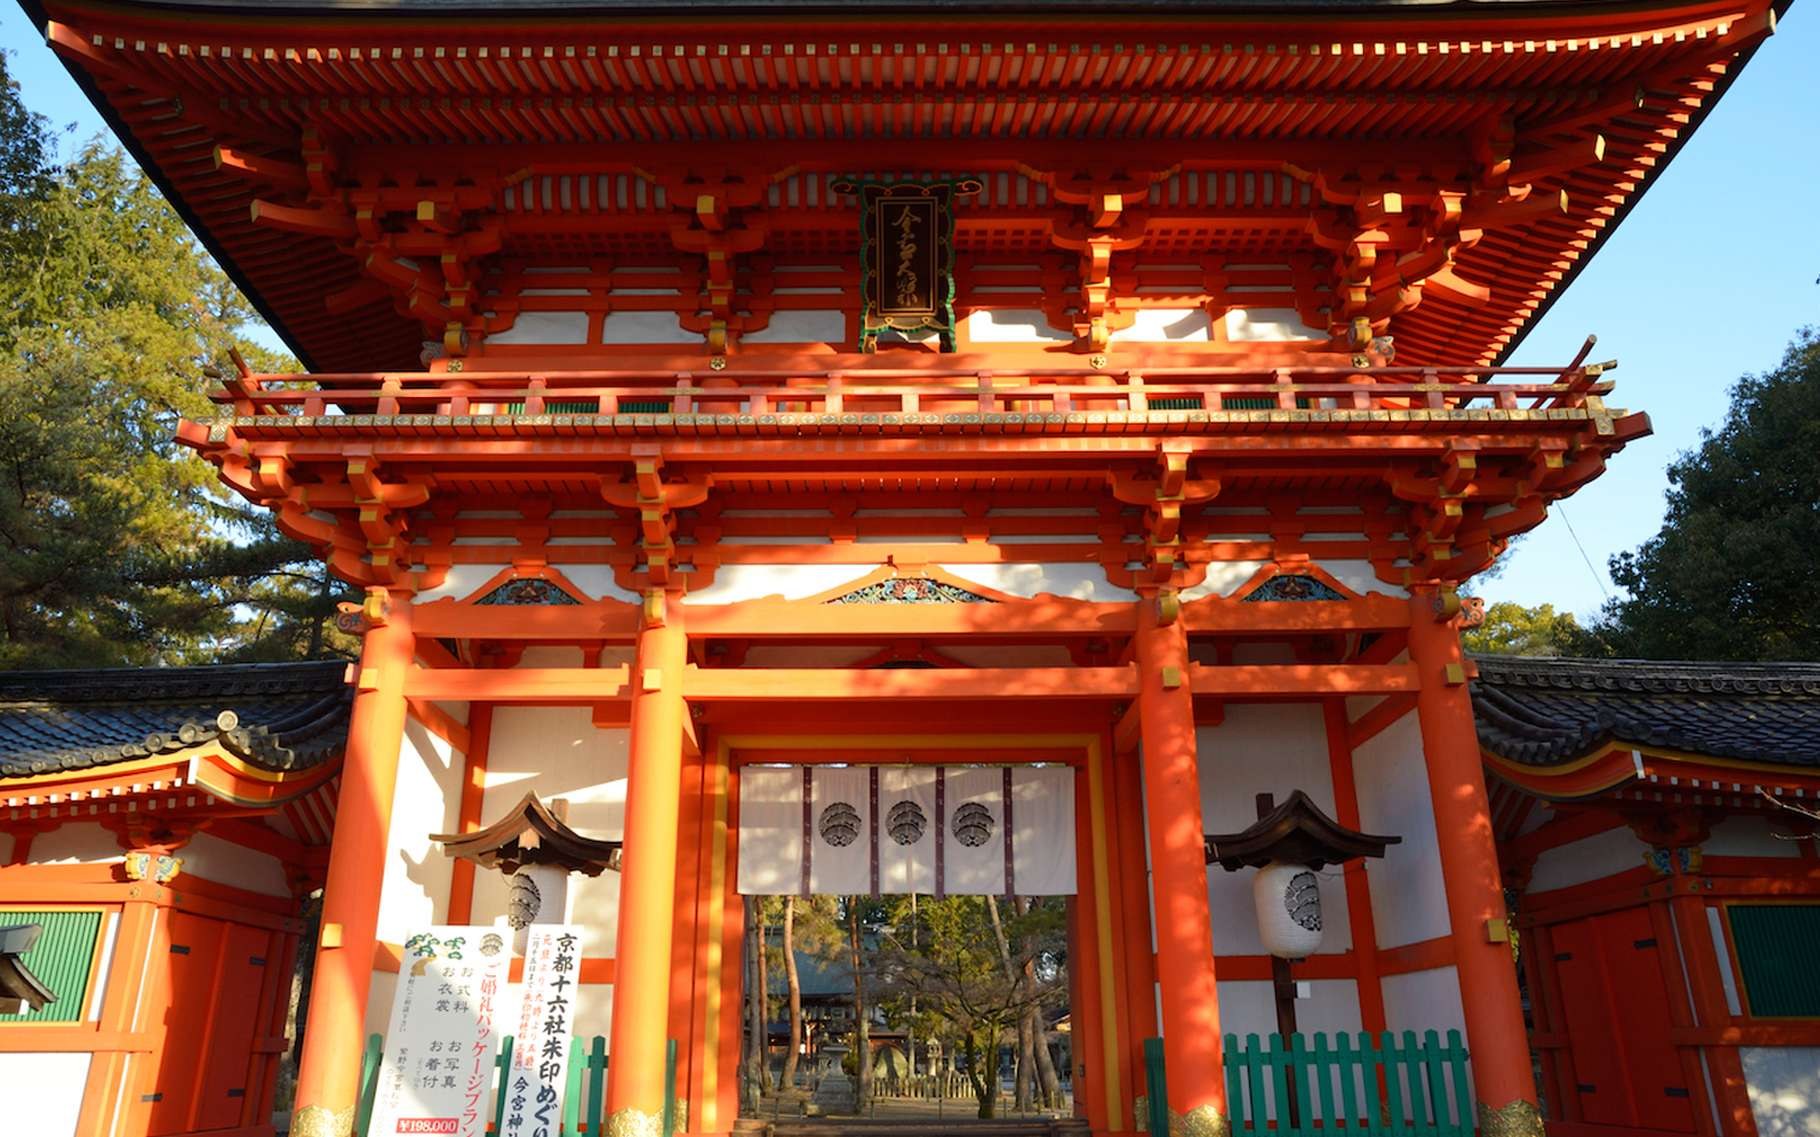 Японские св. Храм Сэйганто дзи Япония. Храм Миохойн в Киото. Храм Бедо Япония. Буддийский храм Бёдоин — Киото, Японии.